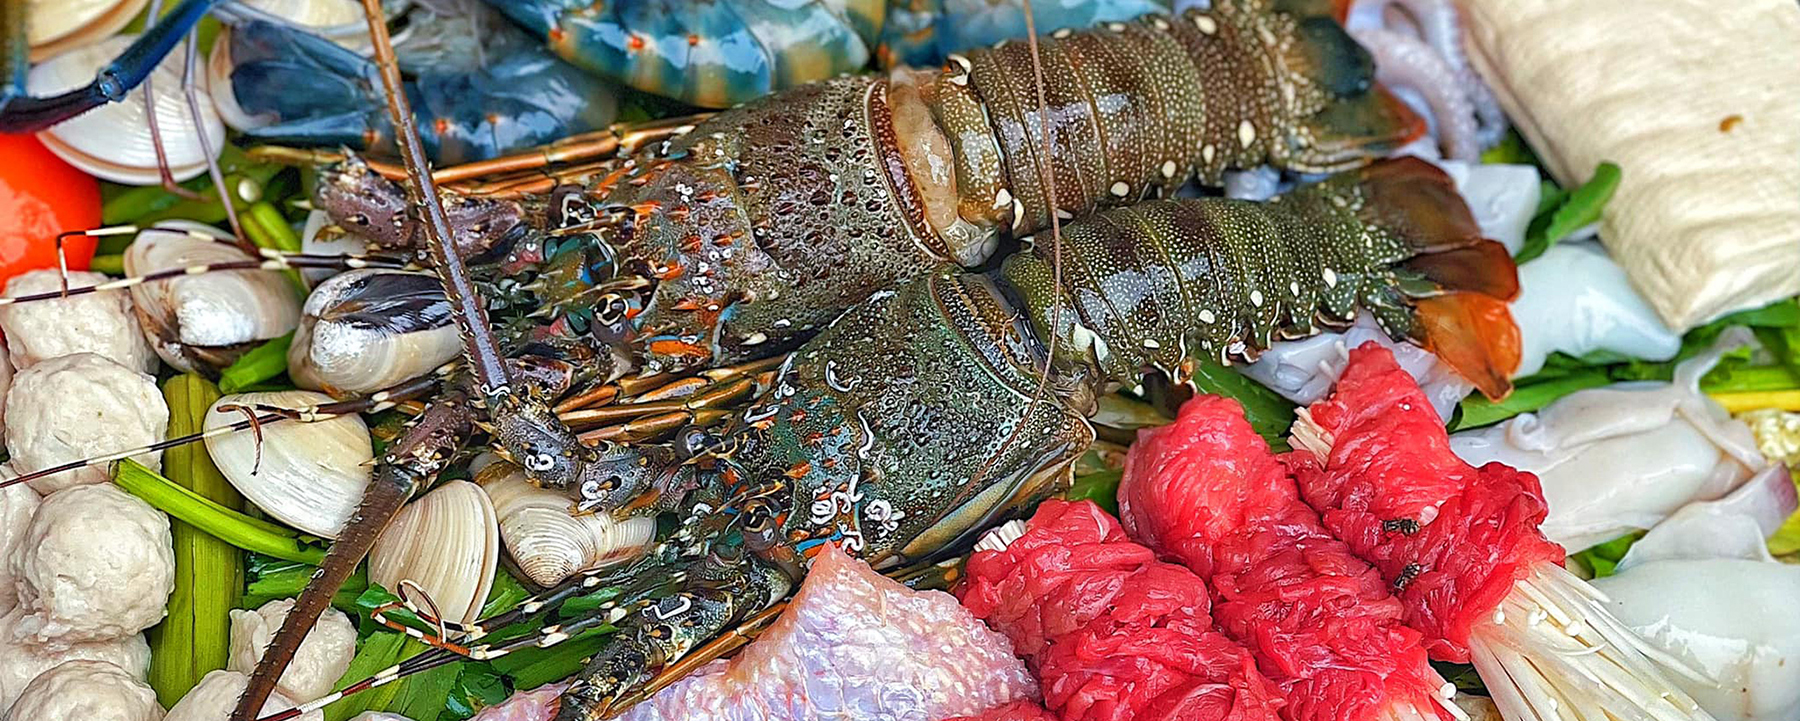 Đồ ăn trong bữa tiệc lẩu hải sản ở Buffet Poseidon được chuẩn bị như thế nào?
